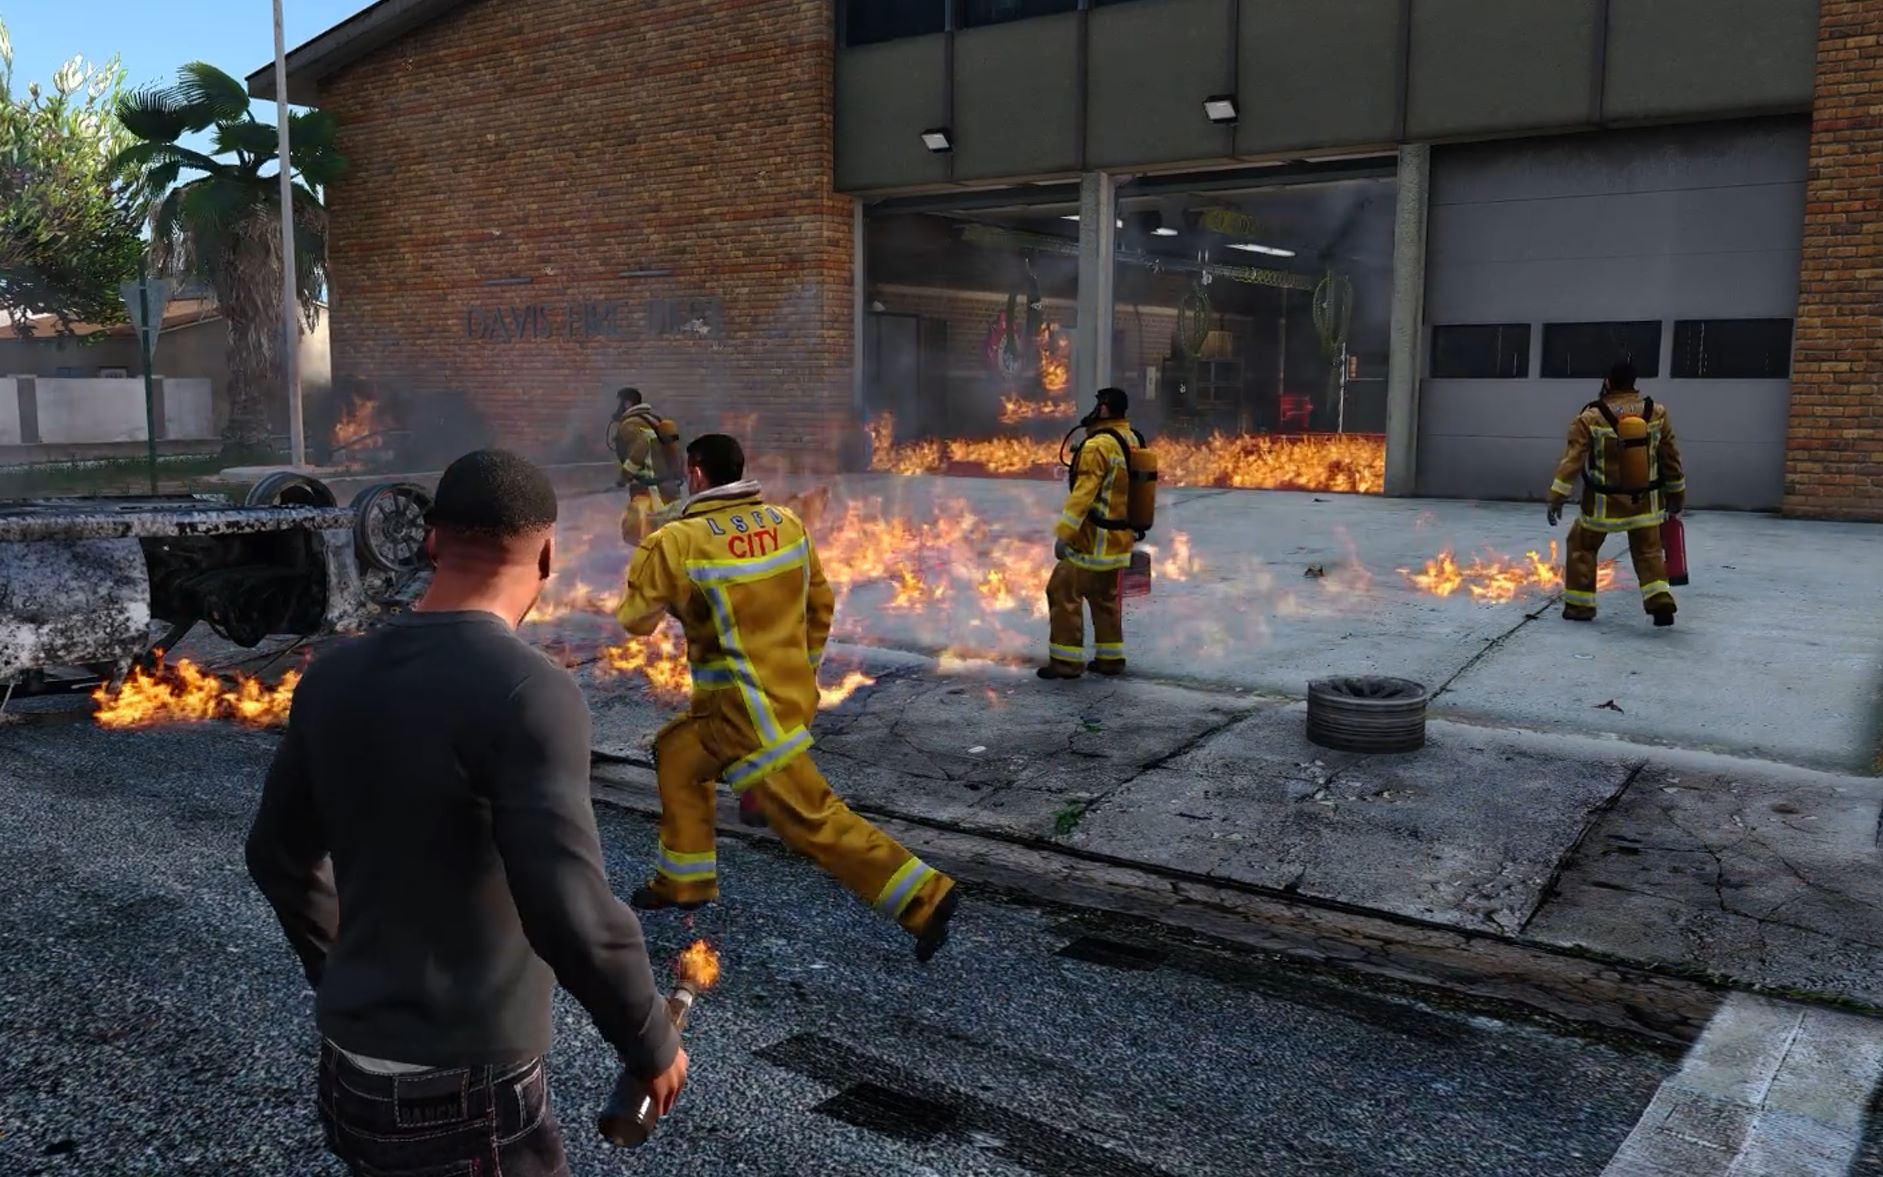 【gta5】在消防局里恶意纵火会发生什么?